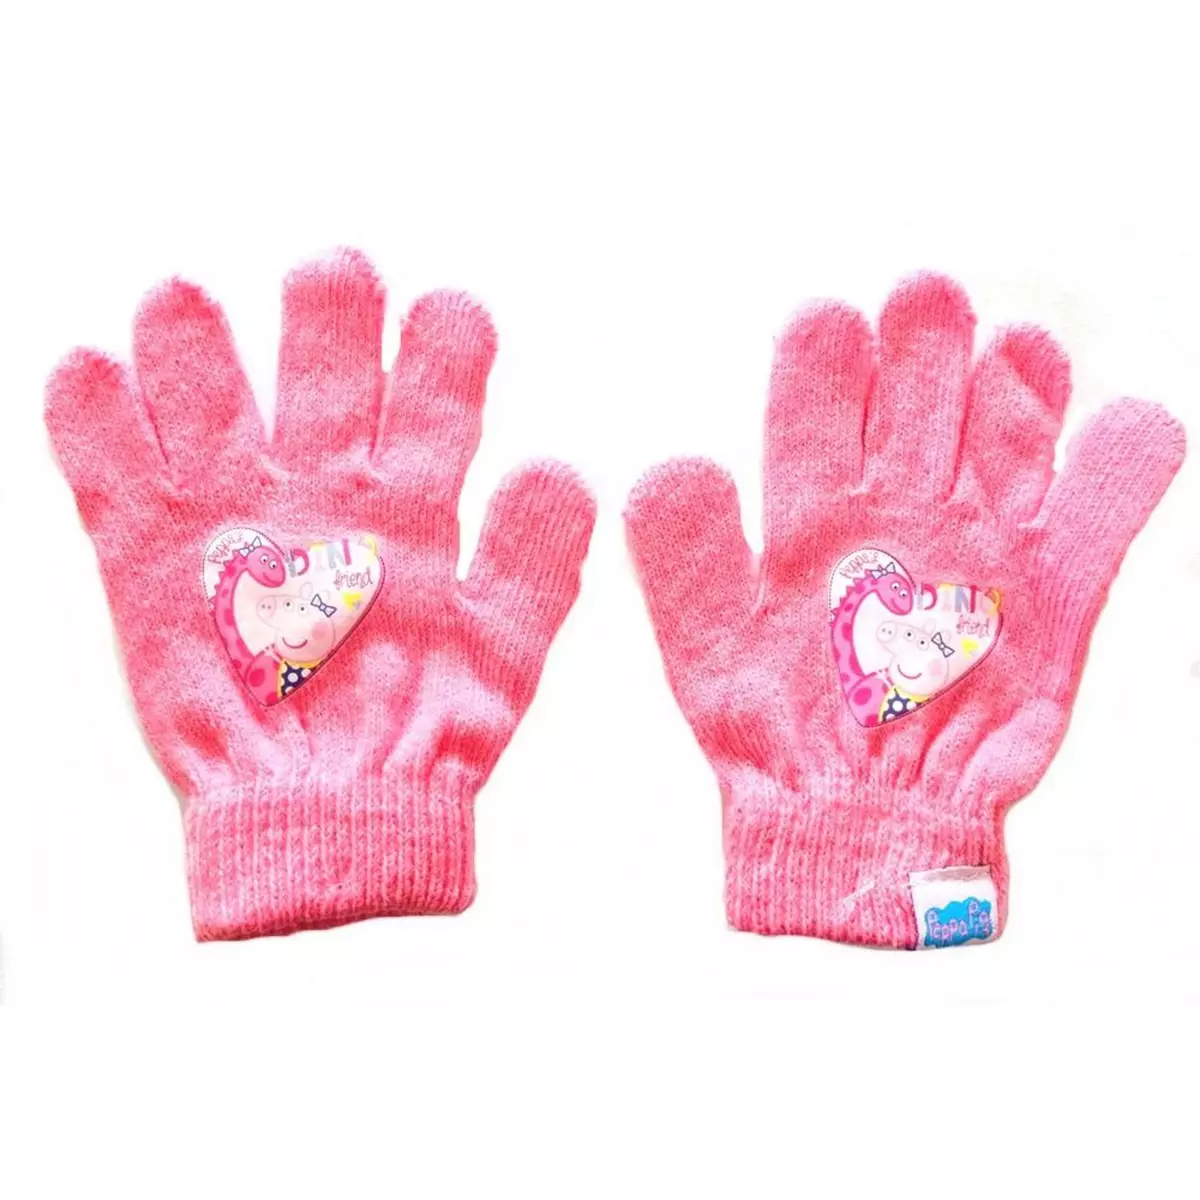  1 paire de gant hiver Peppa Pig enfant gants